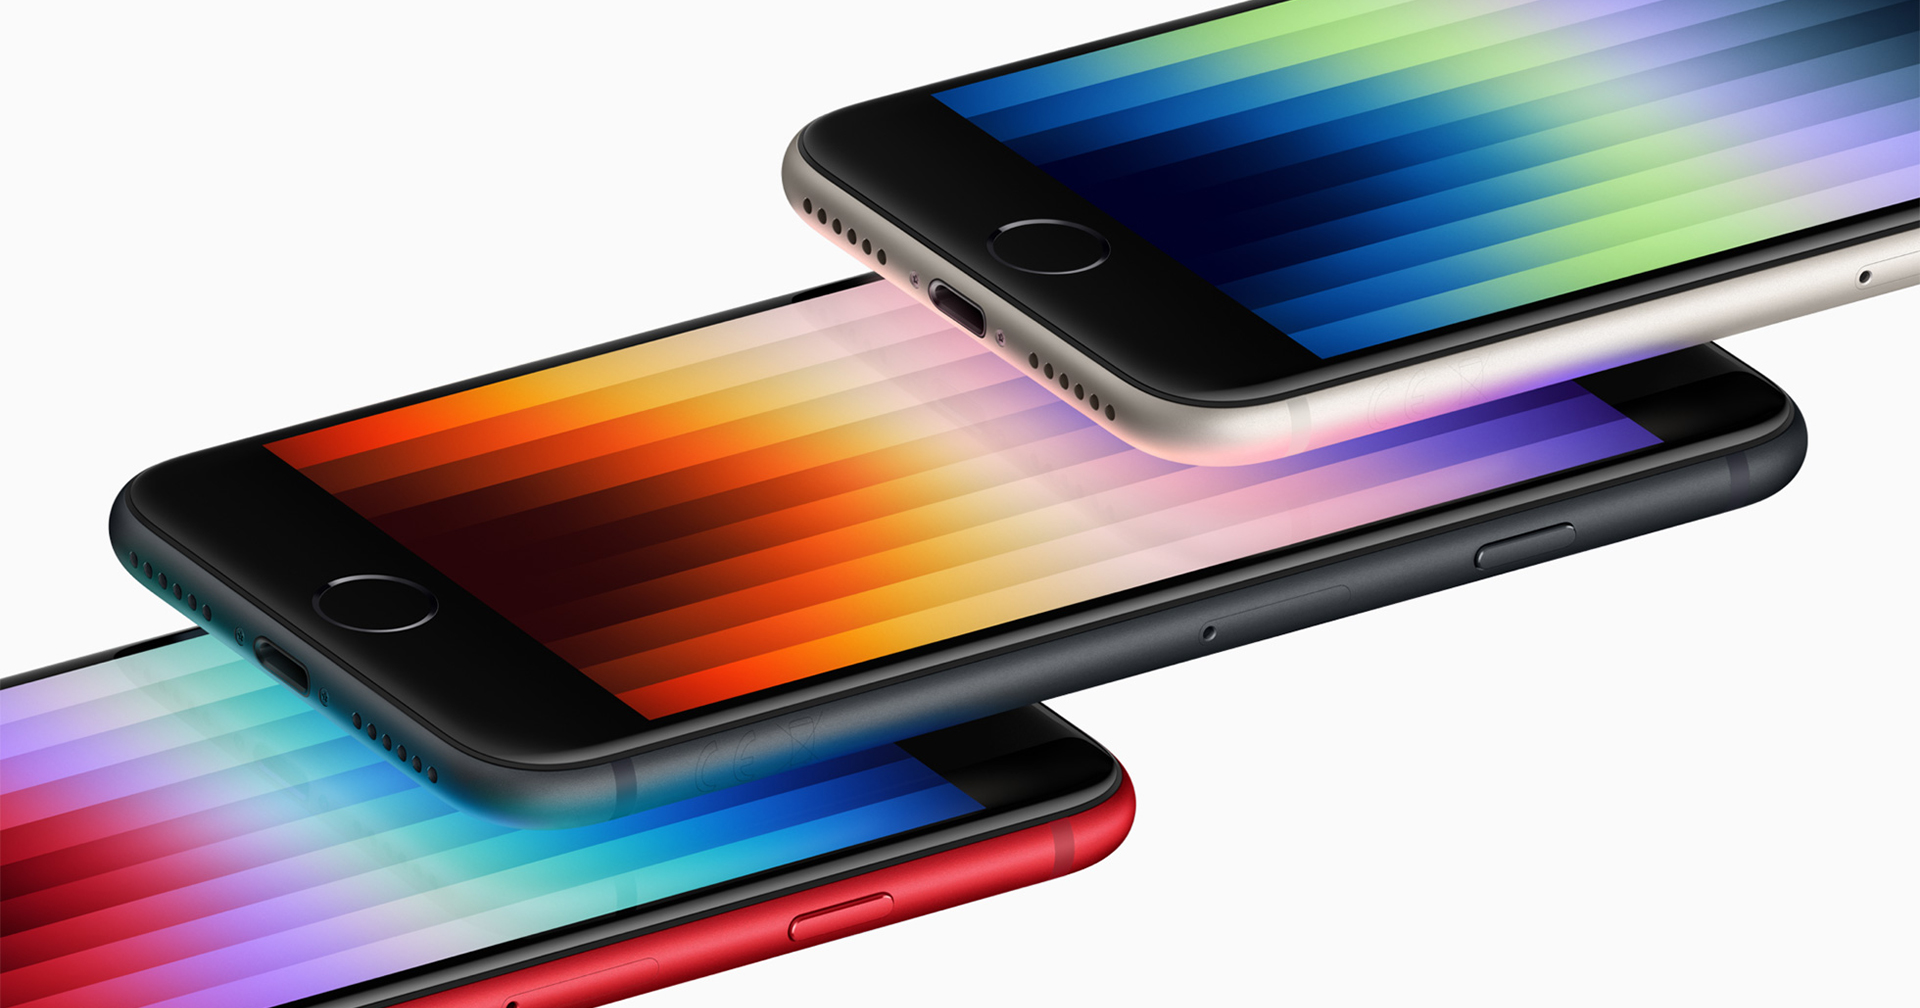 รุ่นเล็กสเปกใหญ่ iPhone SE 2022 สอดไส้เหมือนพี่ใหญ่ ชิป A15, 5G ในราคาเริ่มต้น 15,900 บาท!